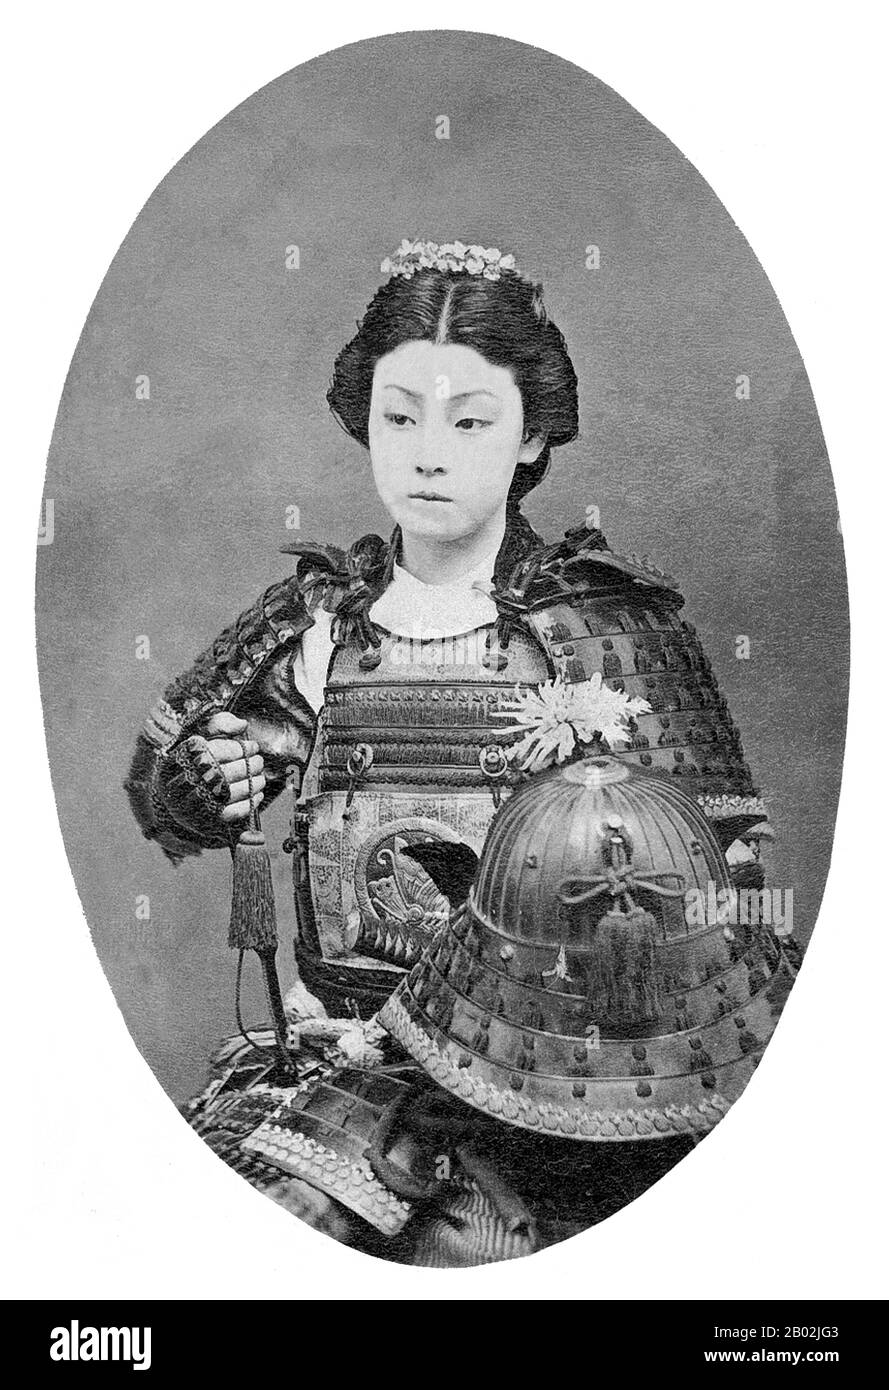 Una onna-bugeisha (女武芸者) era un tipo di guerriero femminile appartenente alla classe superiore giapponese. Molte mogli, vedove, figlie e ribelli hanno risposto alla chiamata del dovere impegnandosi in battaglia, comunemente accanto agli uomini samurai. Erano membri della classe bushi (samurai) in Giappone feudale e furono formati nell'uso di armi per proteggere la loro famiglia, famiglia e onore in tempi di guerra. Essi rappresentavano anche una divergenza dal tradizionale ruolo di 'casalinga' della donna giapponese. A volte vengono chiamati samurai femminili. Icone significative come Empress Jingu, Tomoe Gozen, Nakano Takeko, An Foto Stock